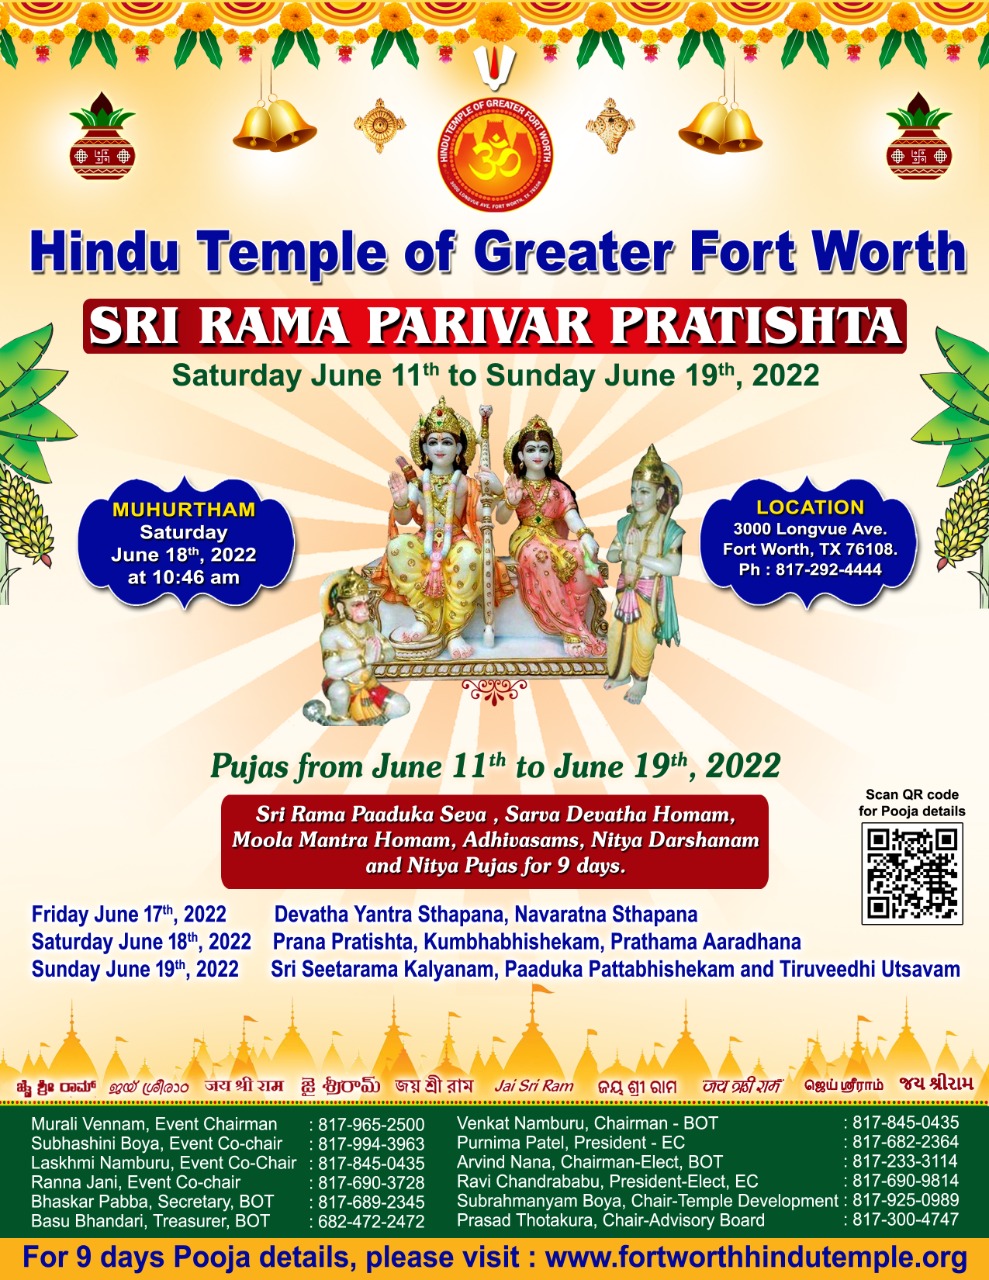 Sri Rama Parivar Pratishta